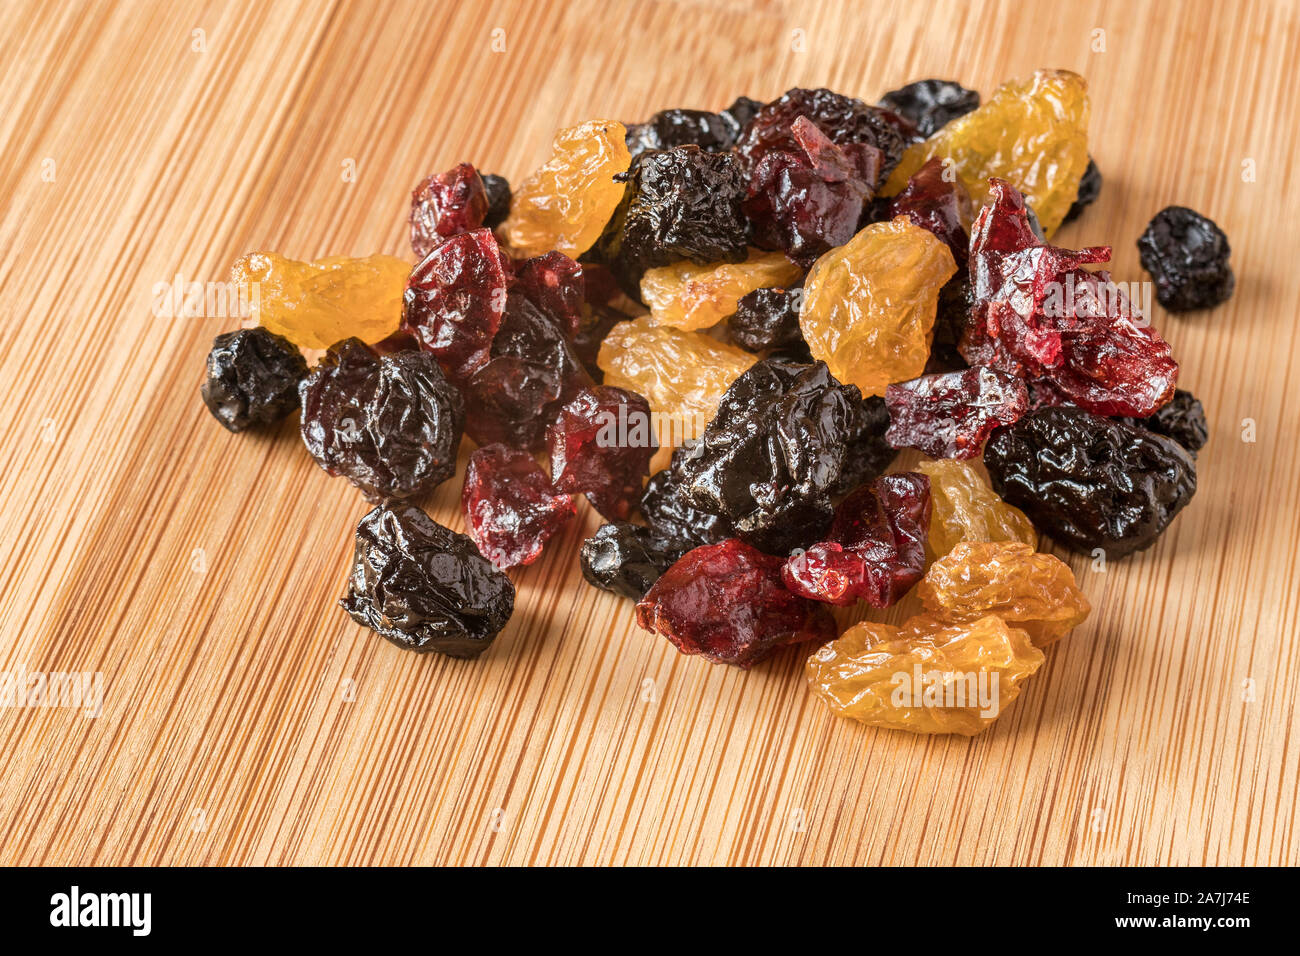 Una manciata di frutta secca mista, con uva passa dorata, ciliegie, mirtilli e mirtilli rossi, su una scheda di bambù. Foto Stock